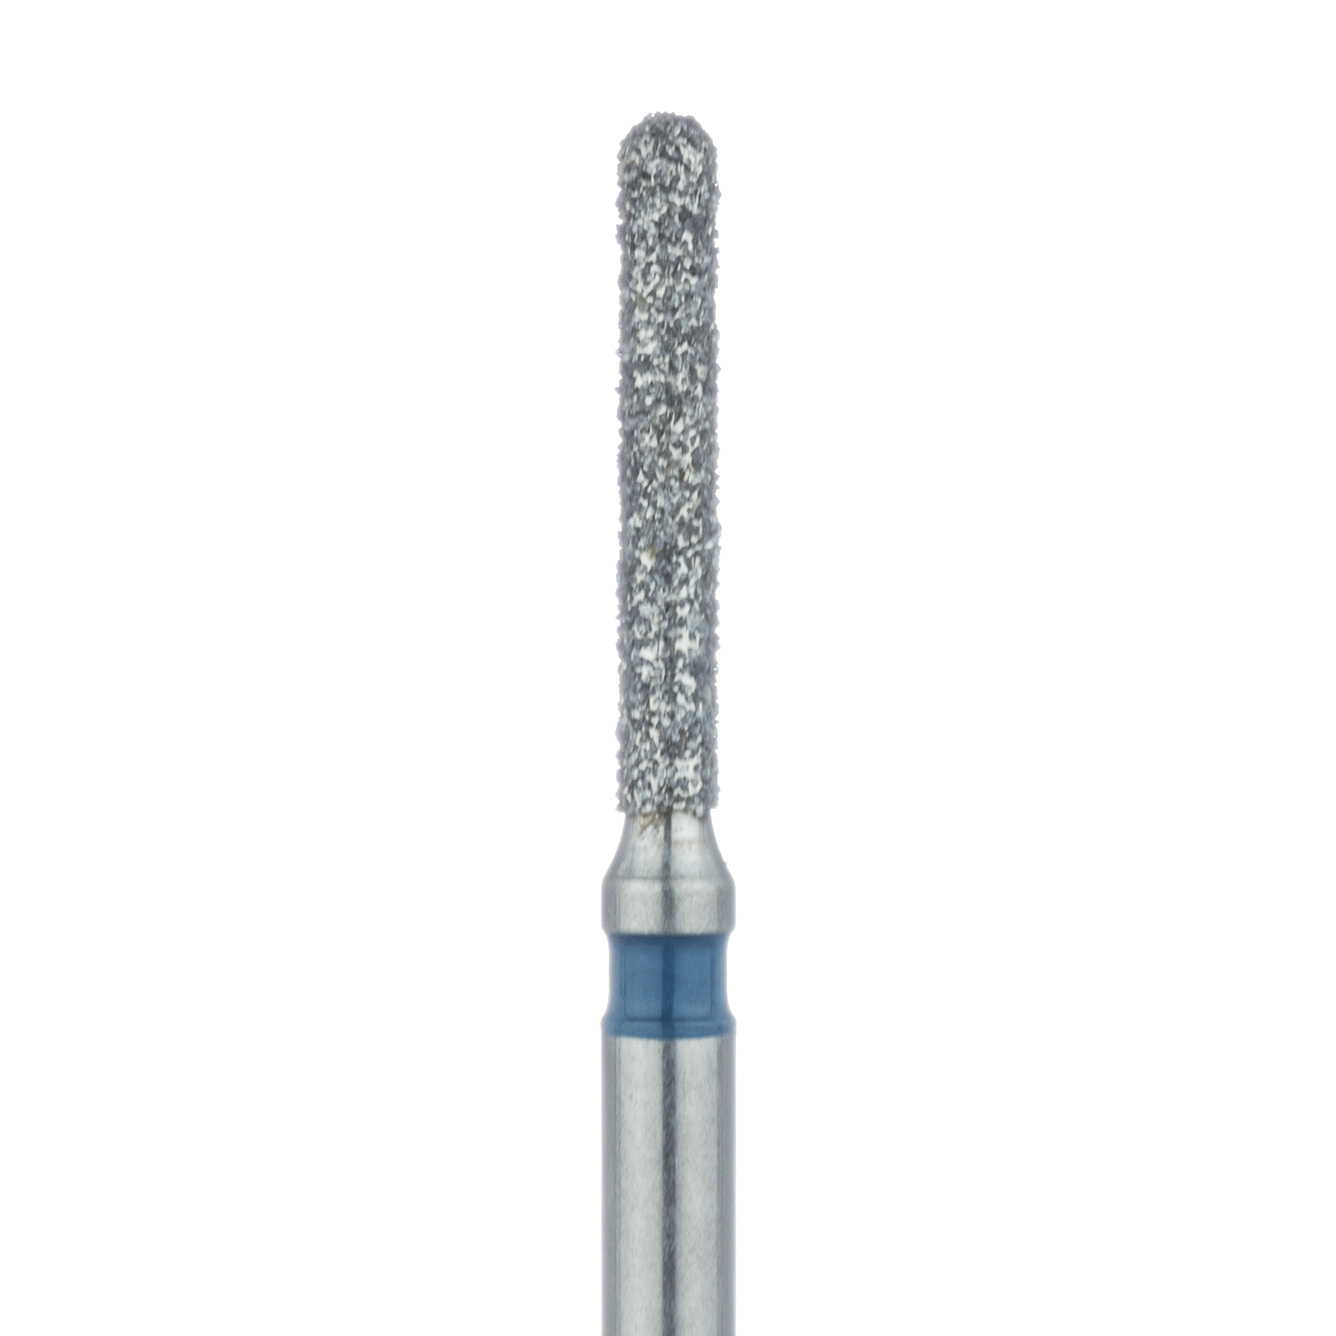 881-012-FG Round End Cylinder Diamond Bur, 1.2mm Ø, Medium, FG